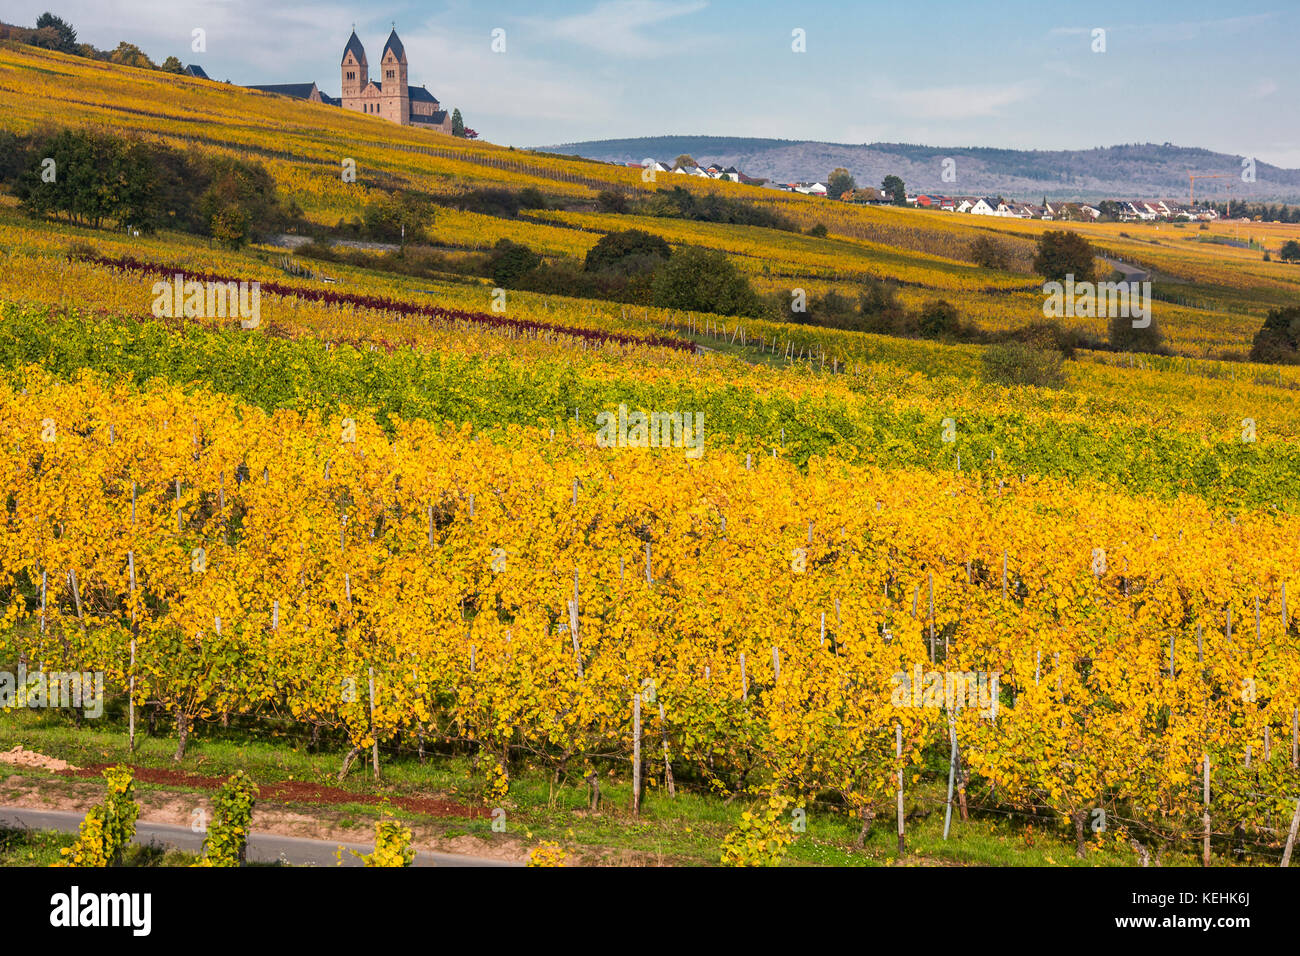 Rüdesheim am Rhein, wine making town in Germany, autumnal vineyards, view to Eibingen abbey (german Abtei St. Hildegard) Stock Photo